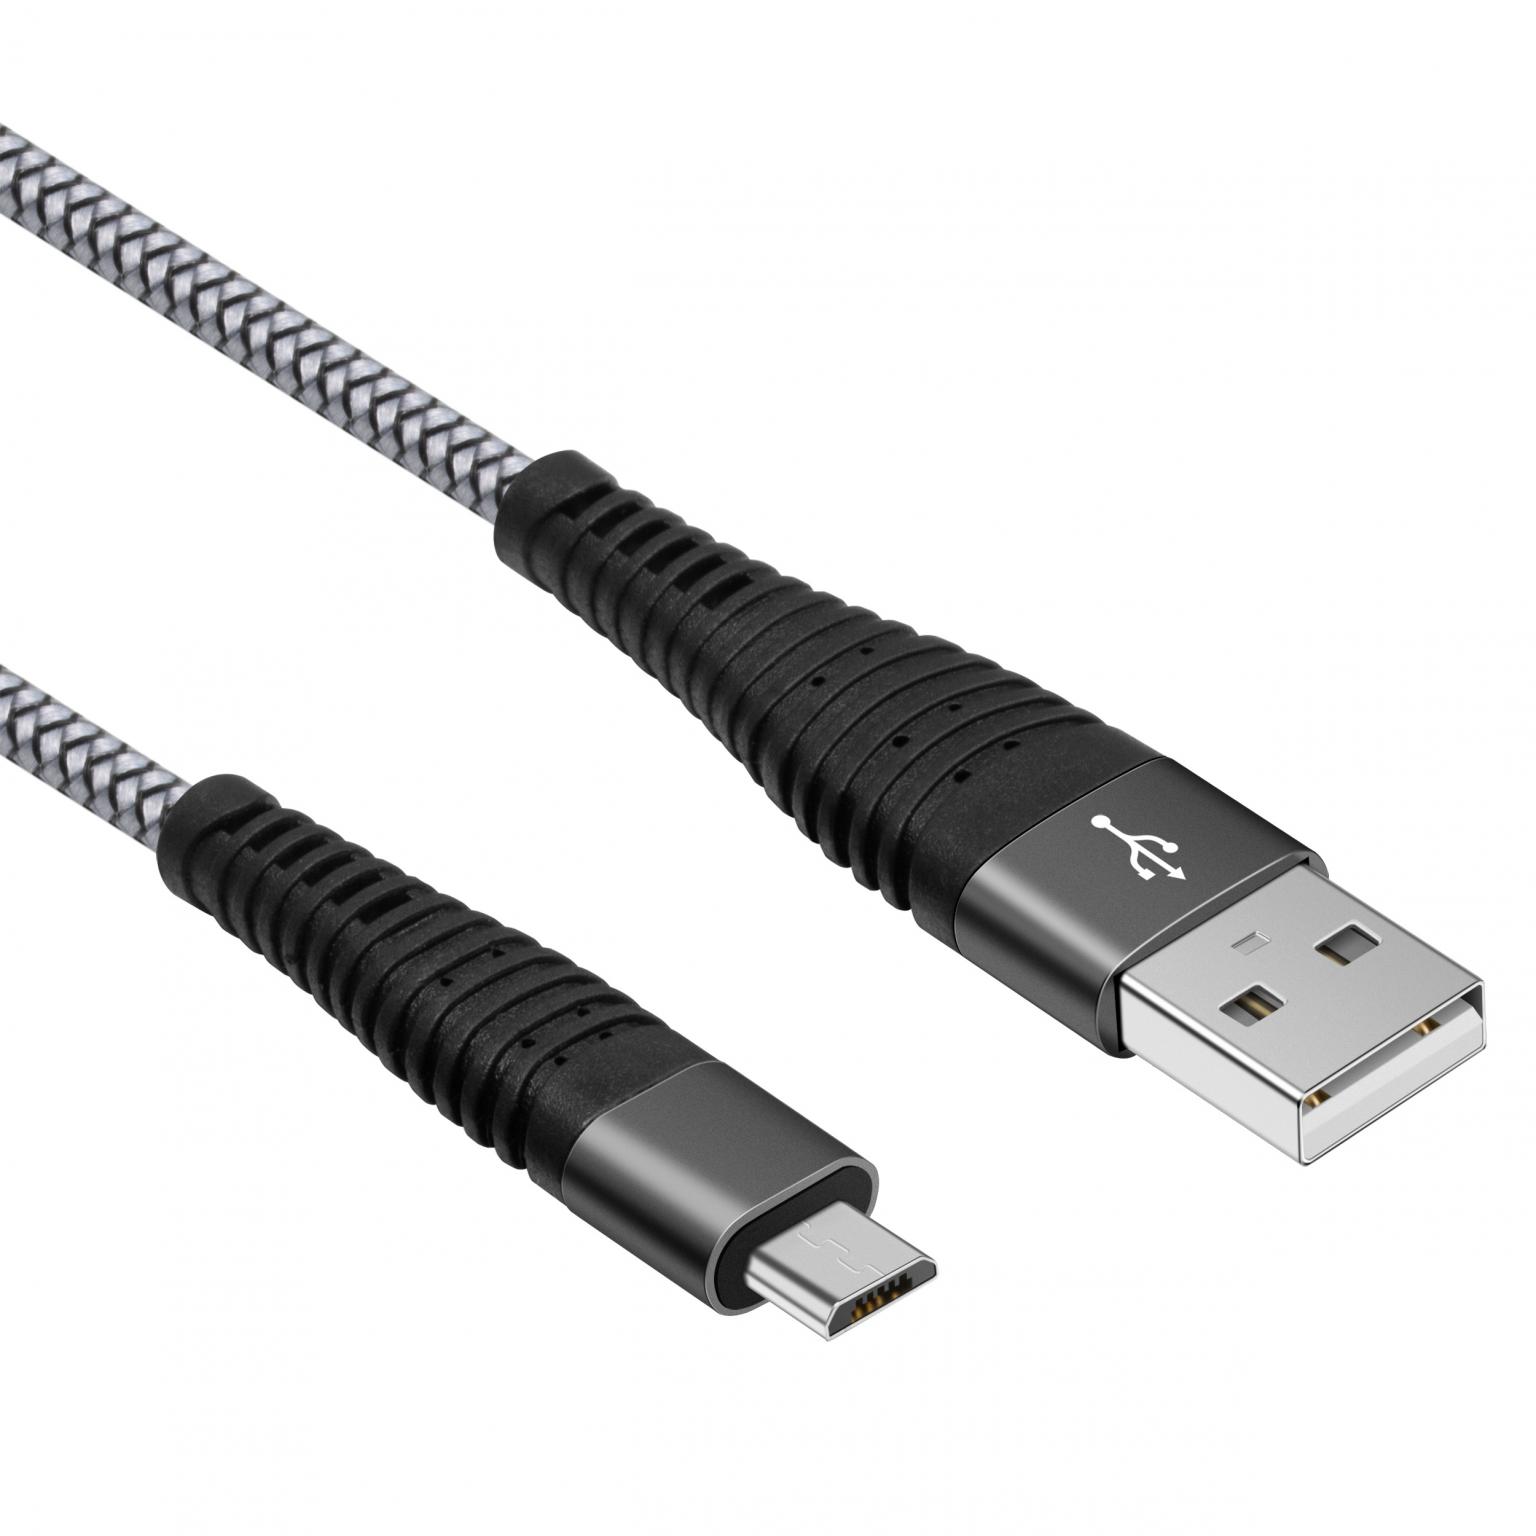 het spoor neef Renaissance Micro USB kabel - Versie: 2.0 - HighSpeed, Extra: Gevlochten mantel  Aansluiting 1: USB A male, Aansluiting 2: Micro USB male Lengte: 1.5 meter